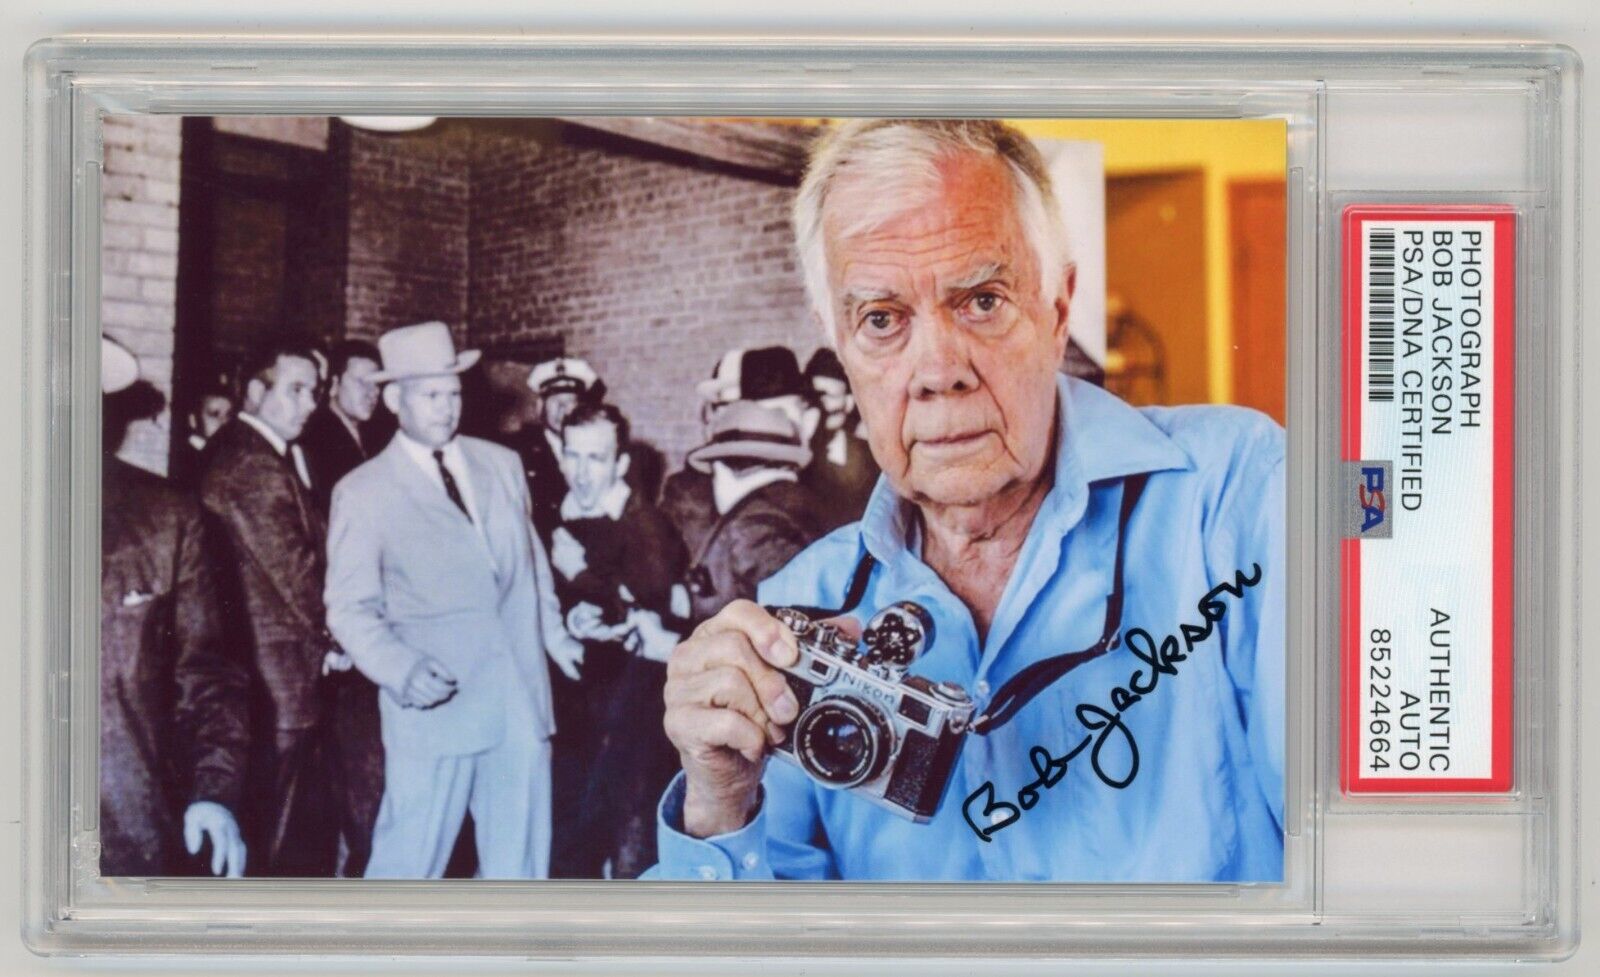 BOB JACKSON Signed Photo - JFK Lee Harvey Oswald Murder Photographer - PSA